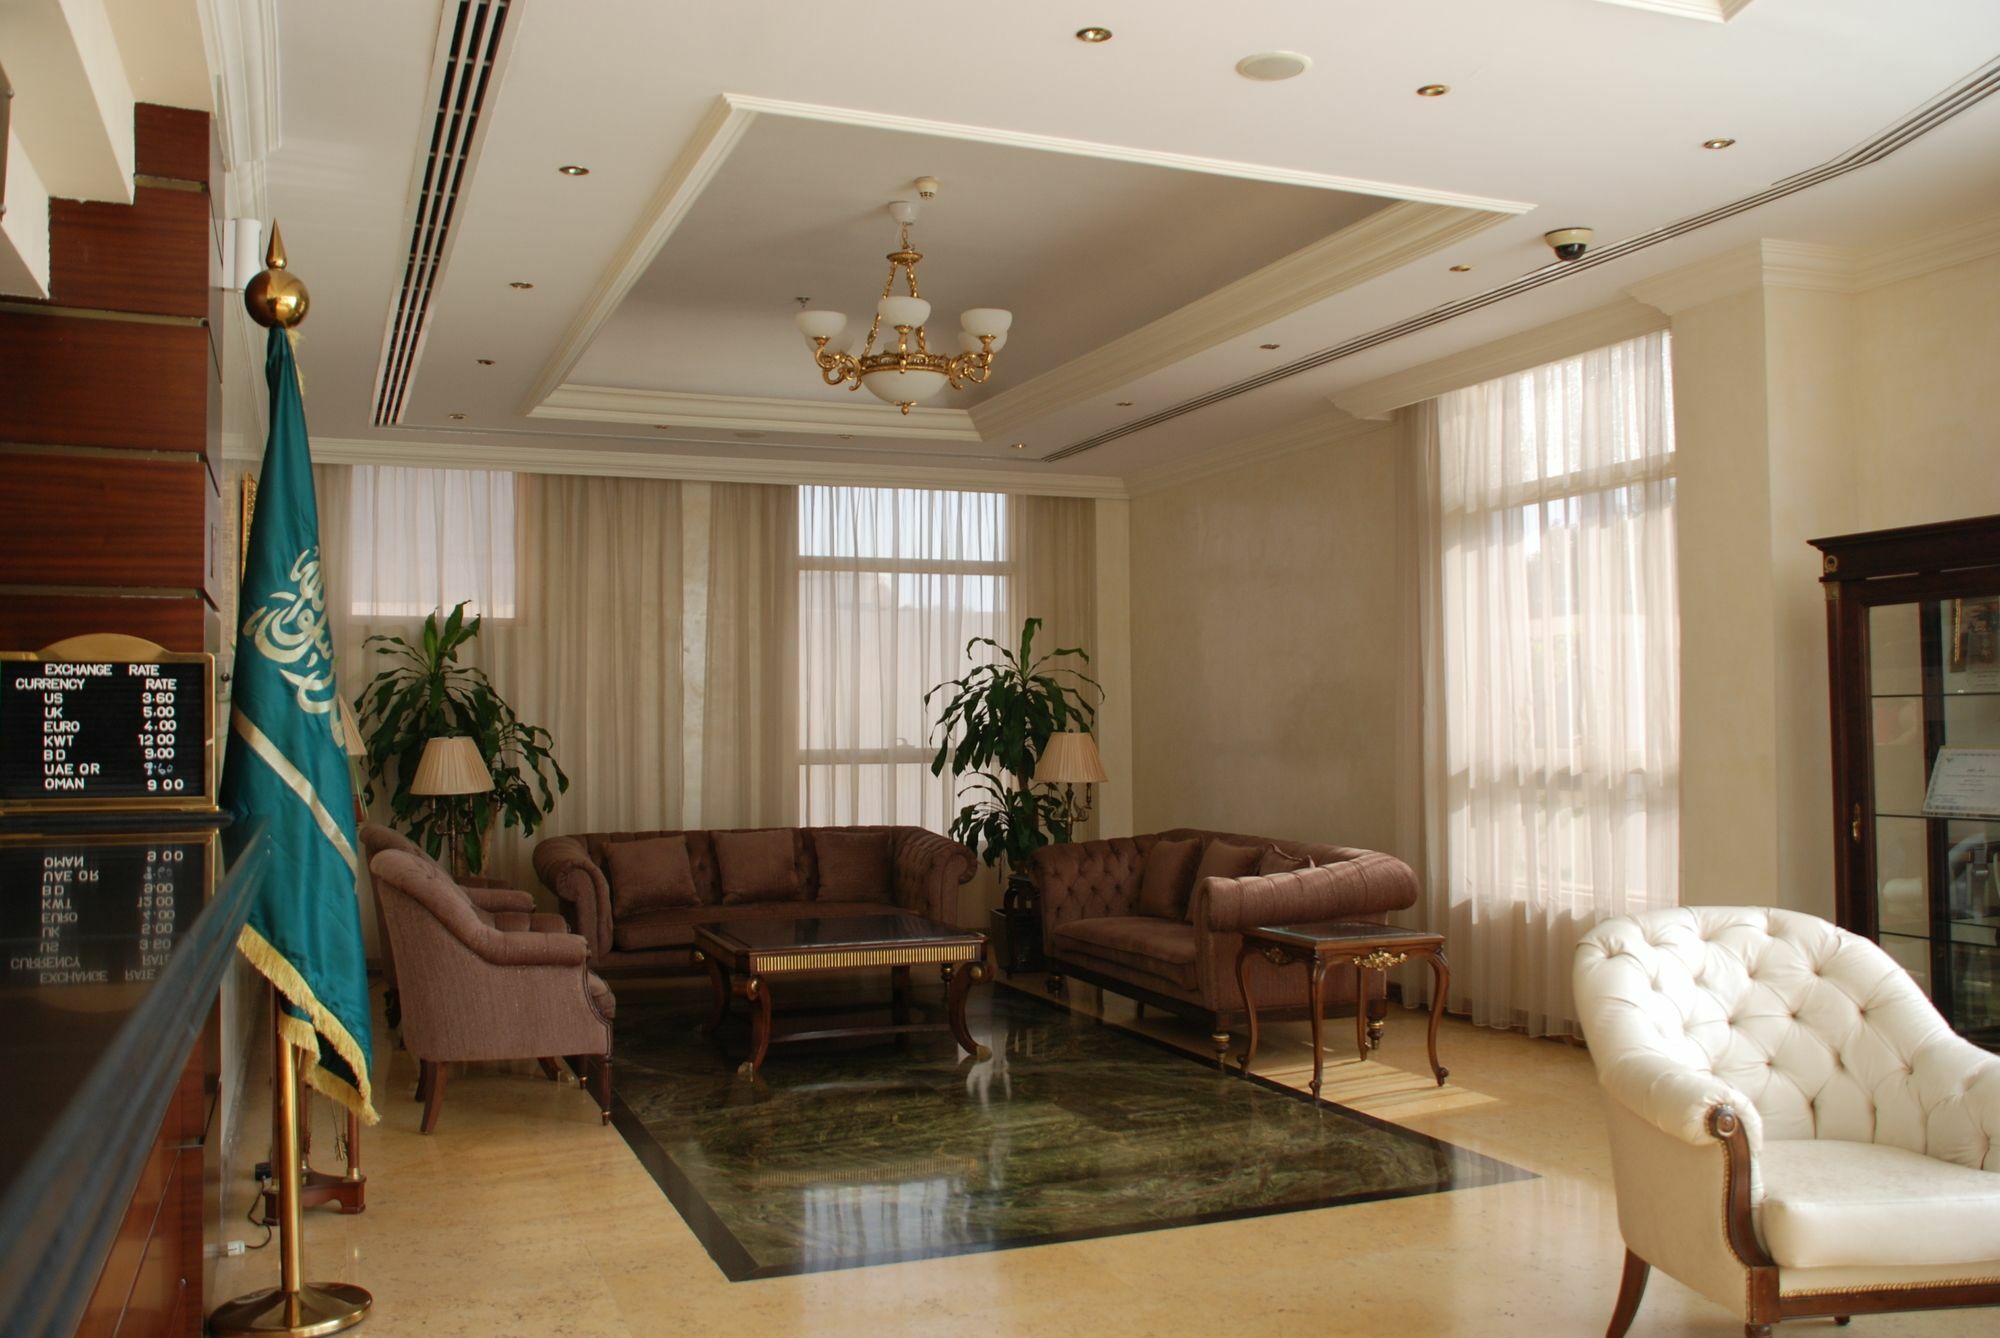 Rooz Park Hotel Al Khobar Exterior photo